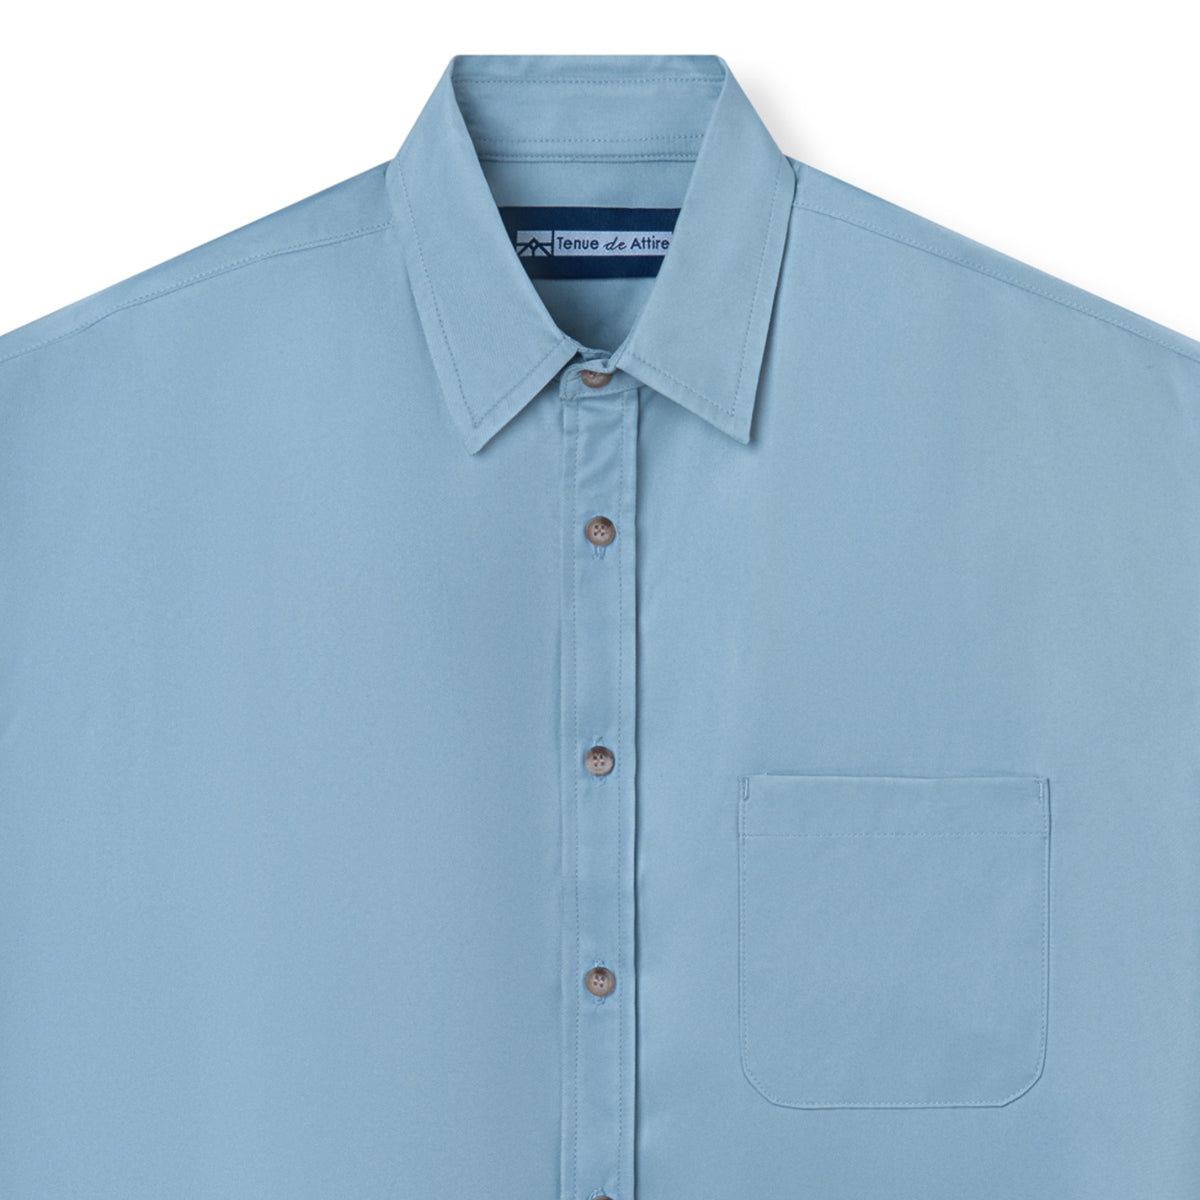 Officine Short Sleeve Shirt - Soft Blue